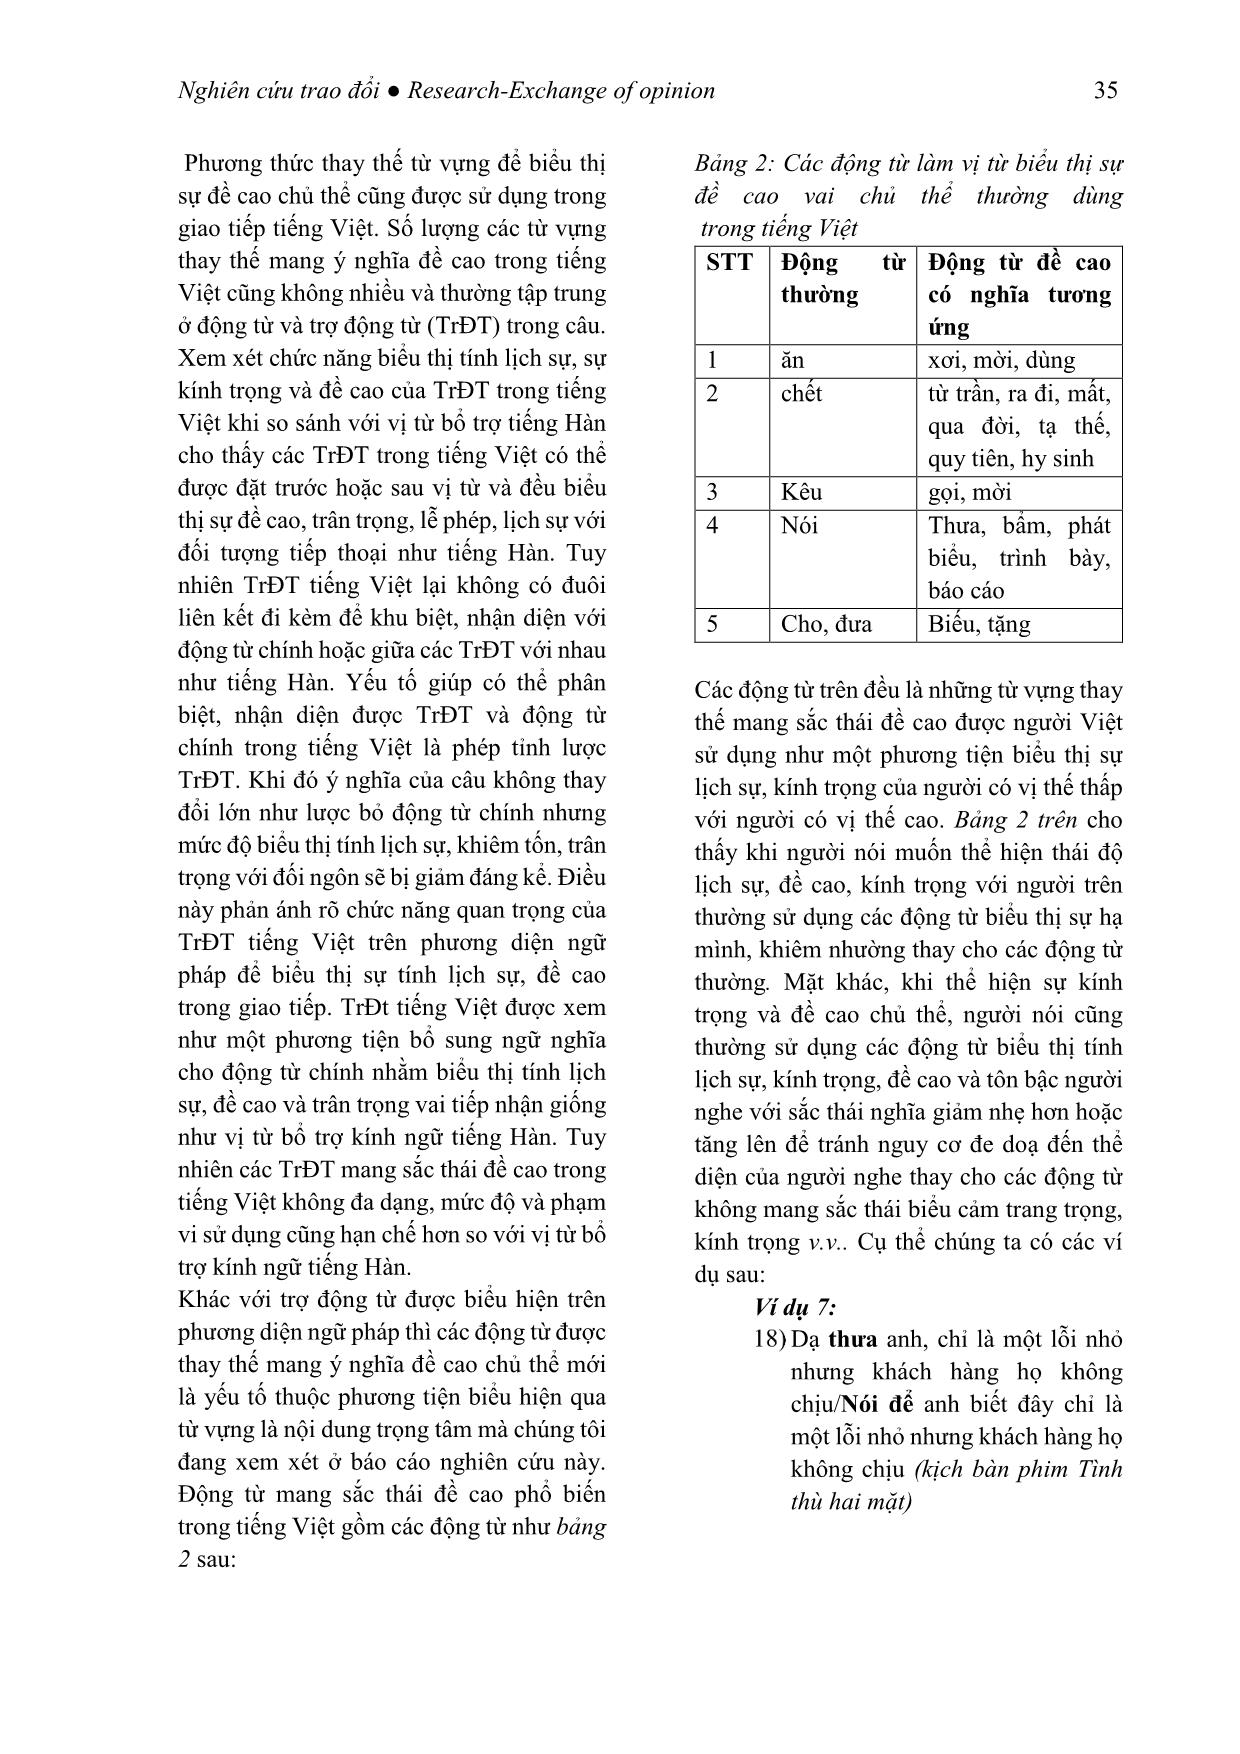 Kính ngữ tiếng Hàn qua phương thức thay thế từ vựng (Xét trong mối tương quan với tiếng Việt) trang 9